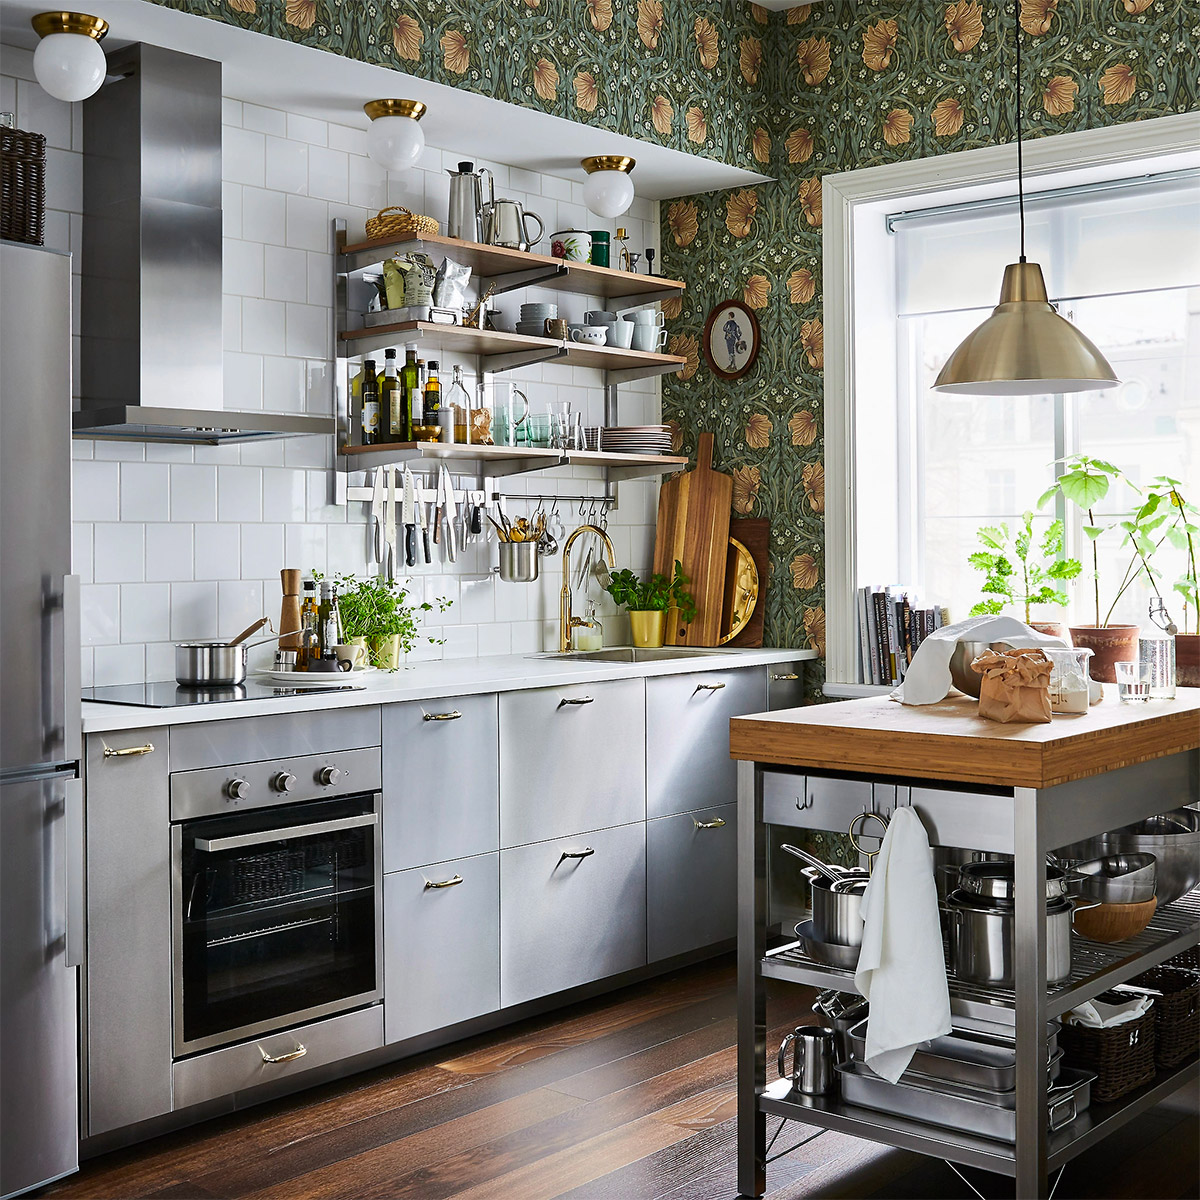 50 nhà bếp nhỏ thiết kế tuyệt vời mà bạn có thể làm theo 29